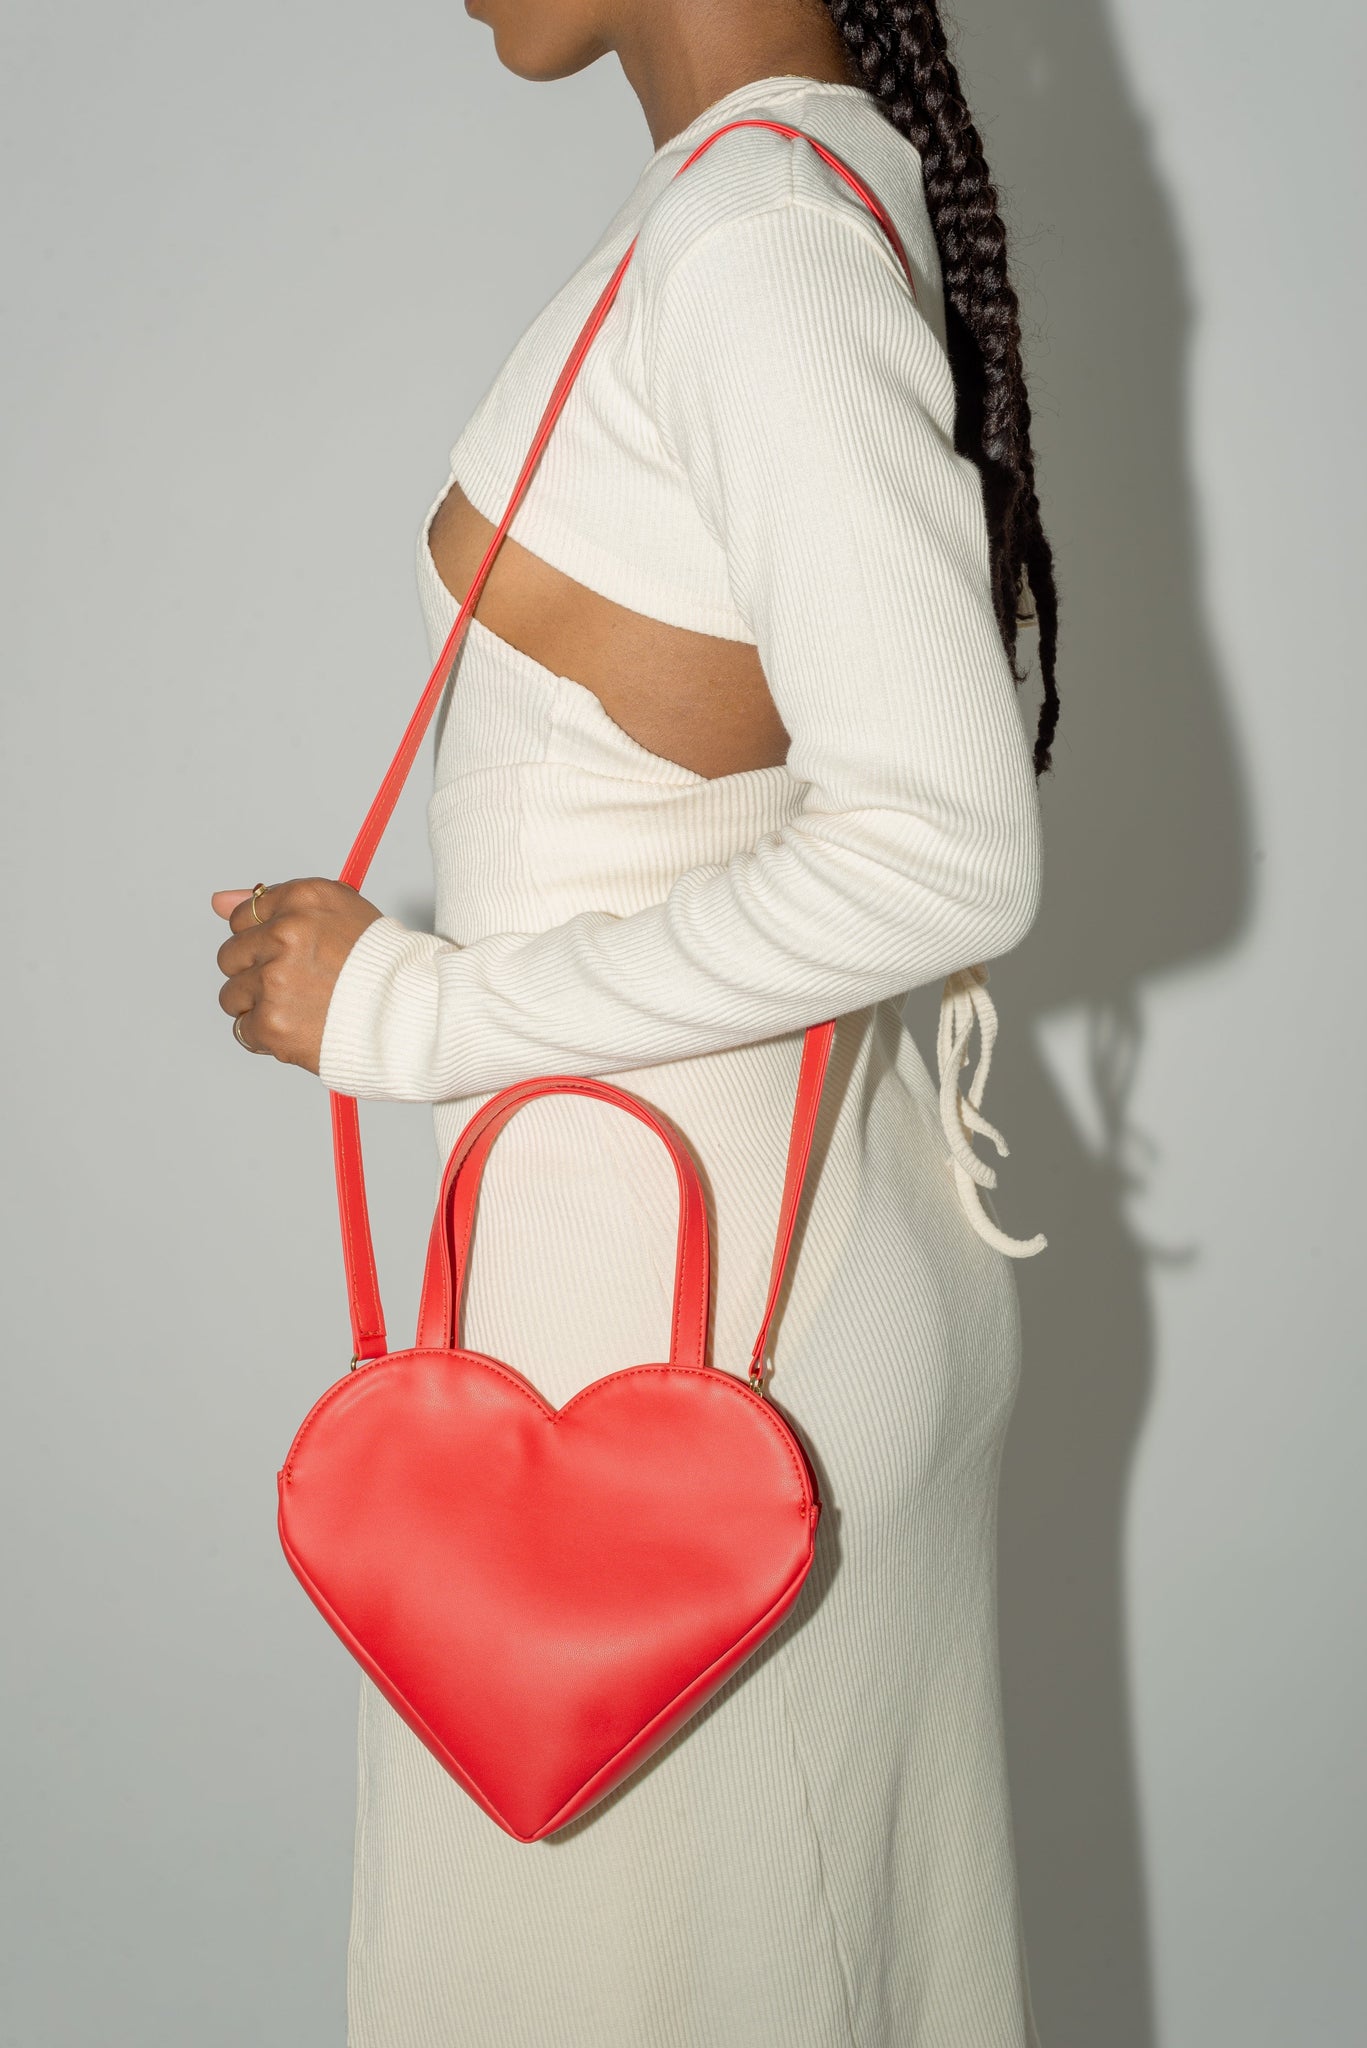 Red Heart Shaped Handbag